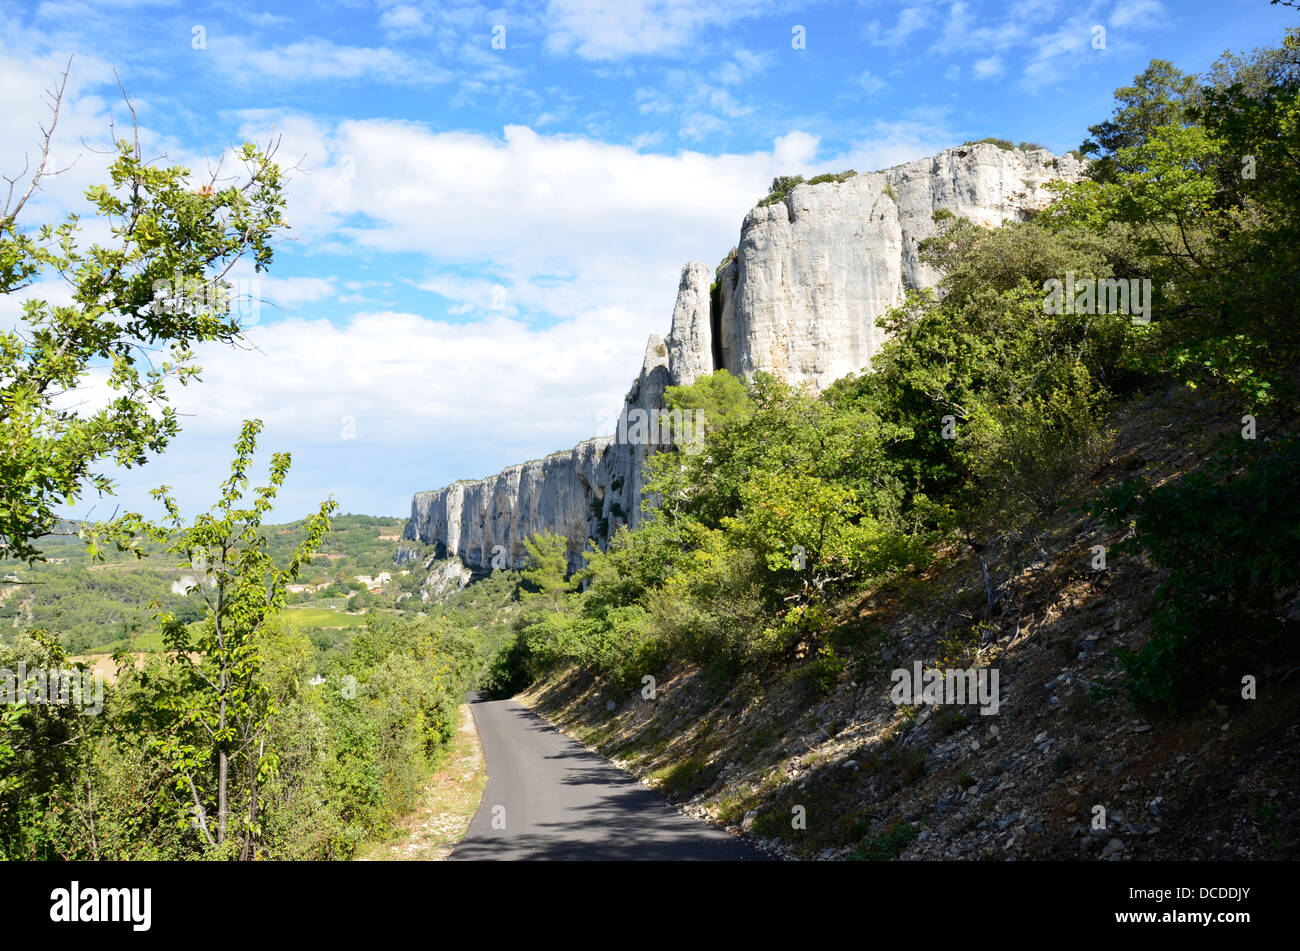 The Cliffs of Lioux (Vaucluse)  - Falaise de Lioux department of Vaucluse, Provence-Alpes-Côte d'Azur, Stock Photo